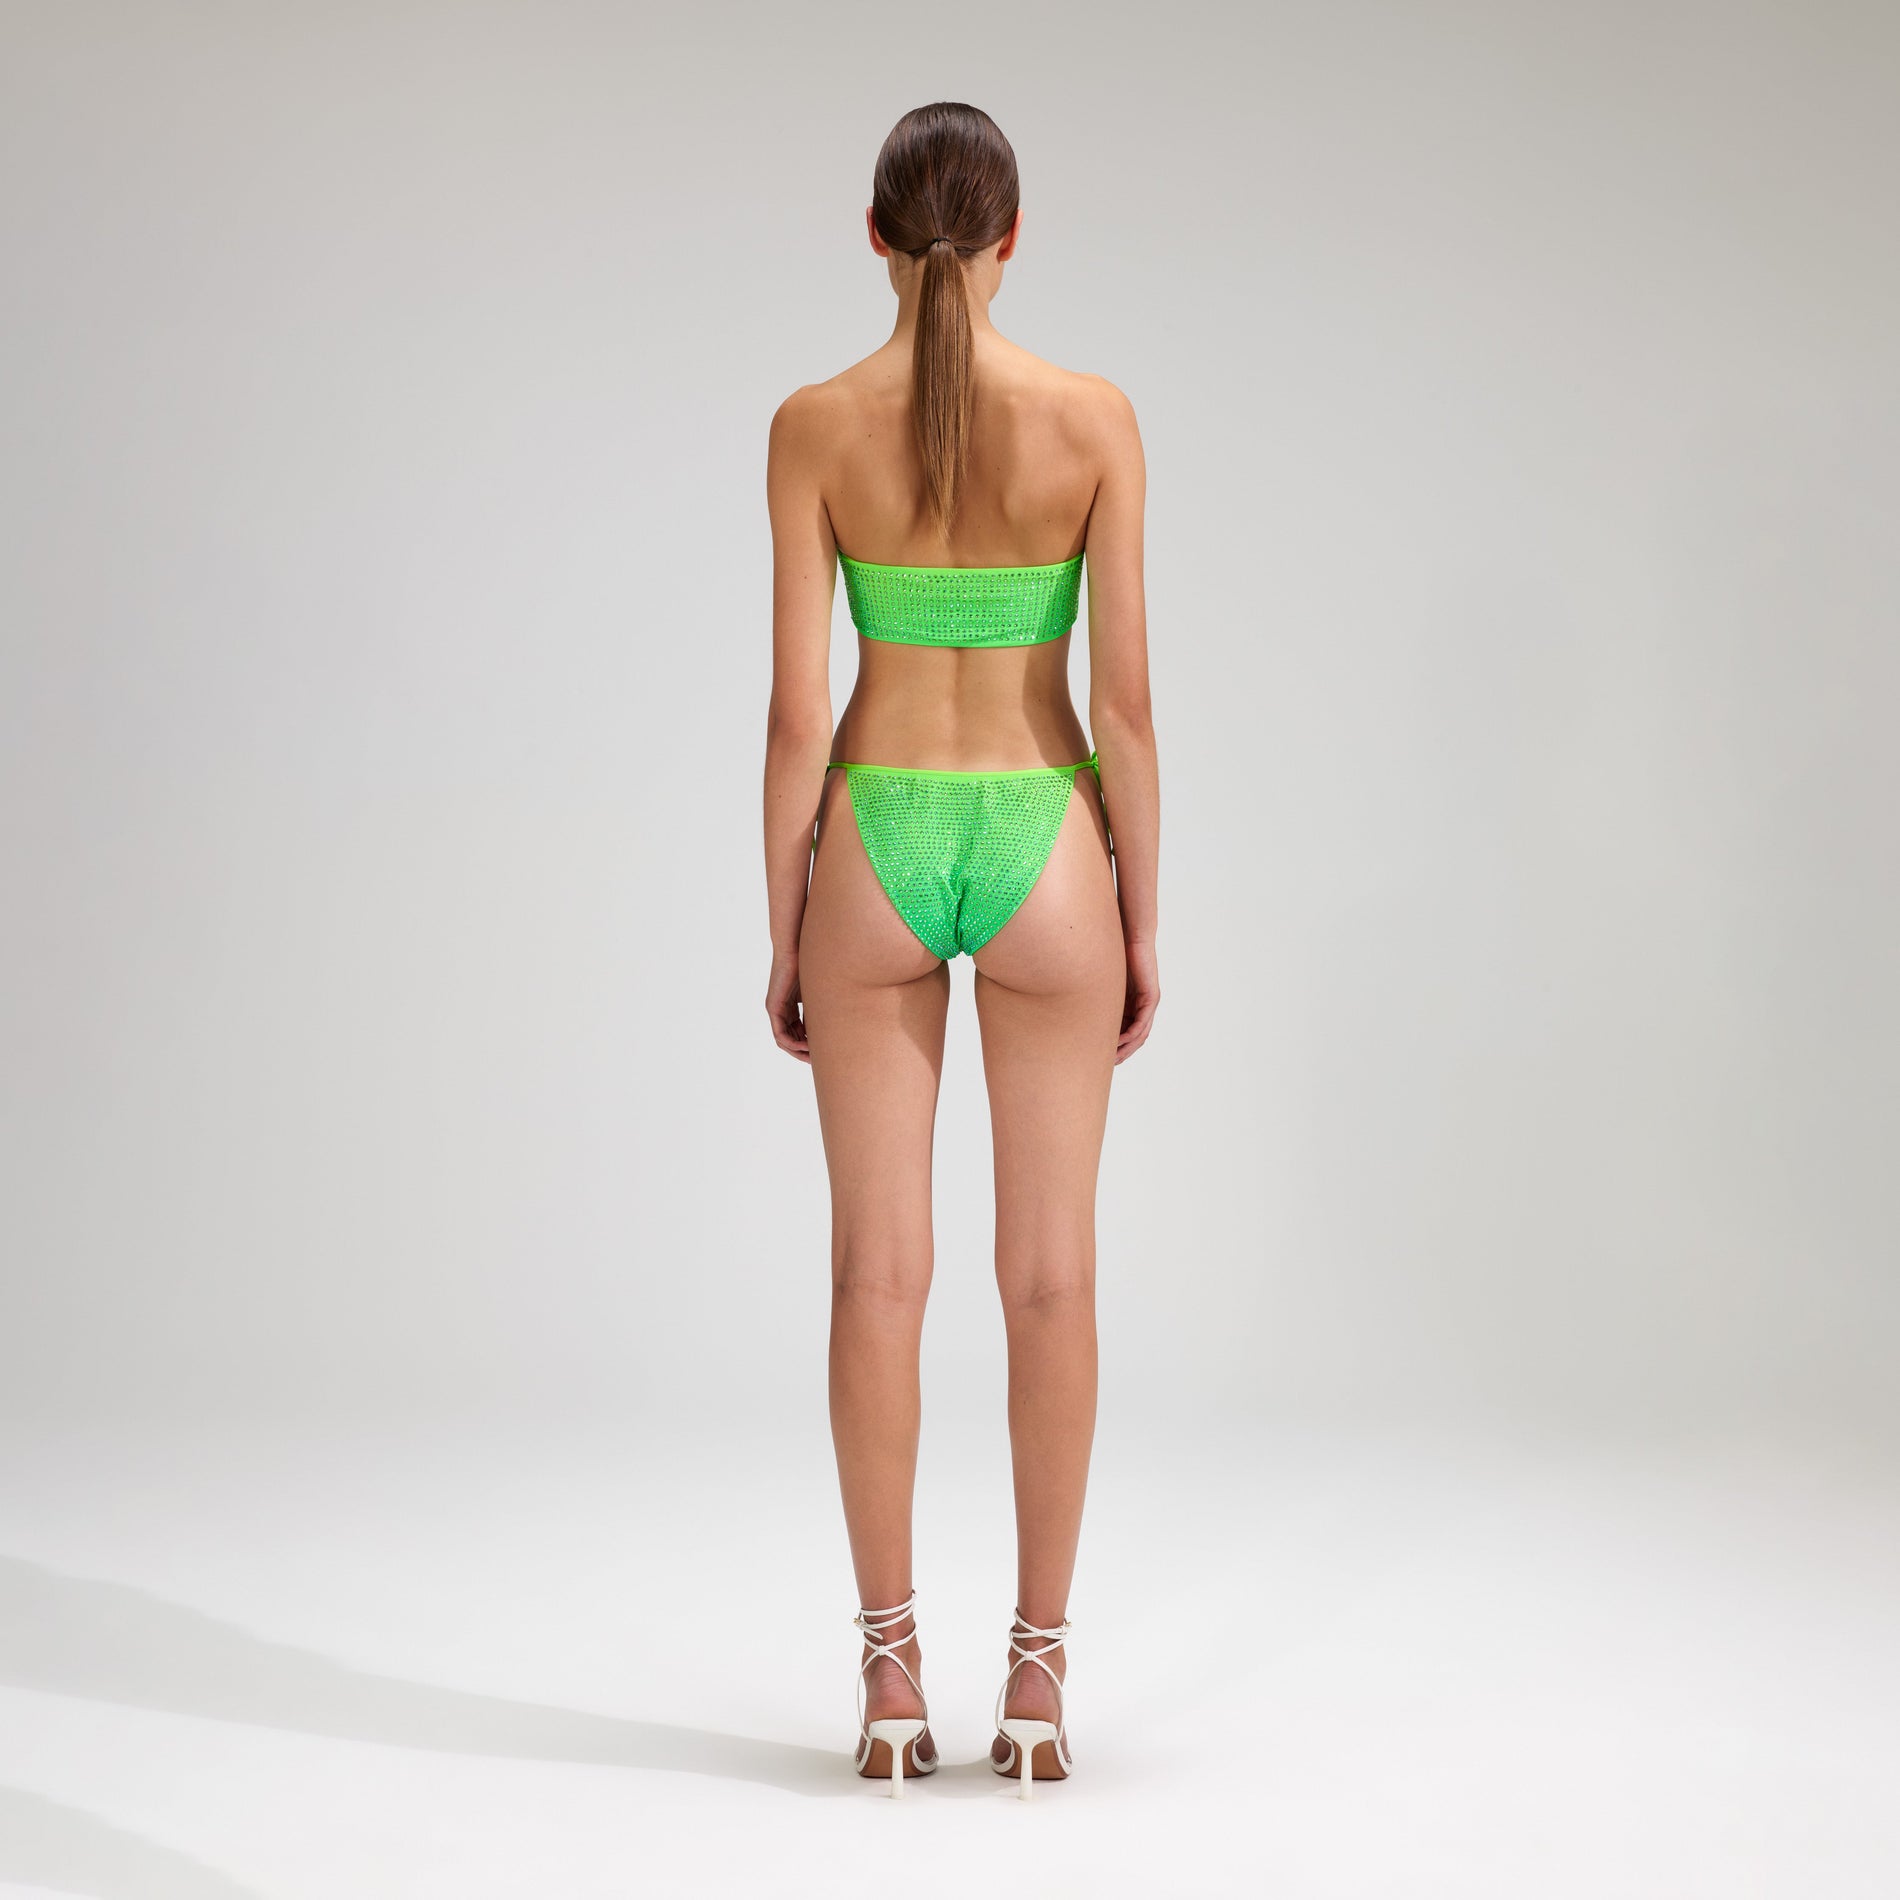 A woman wearing the Green Rhinestone Tie Side Bikini Brief